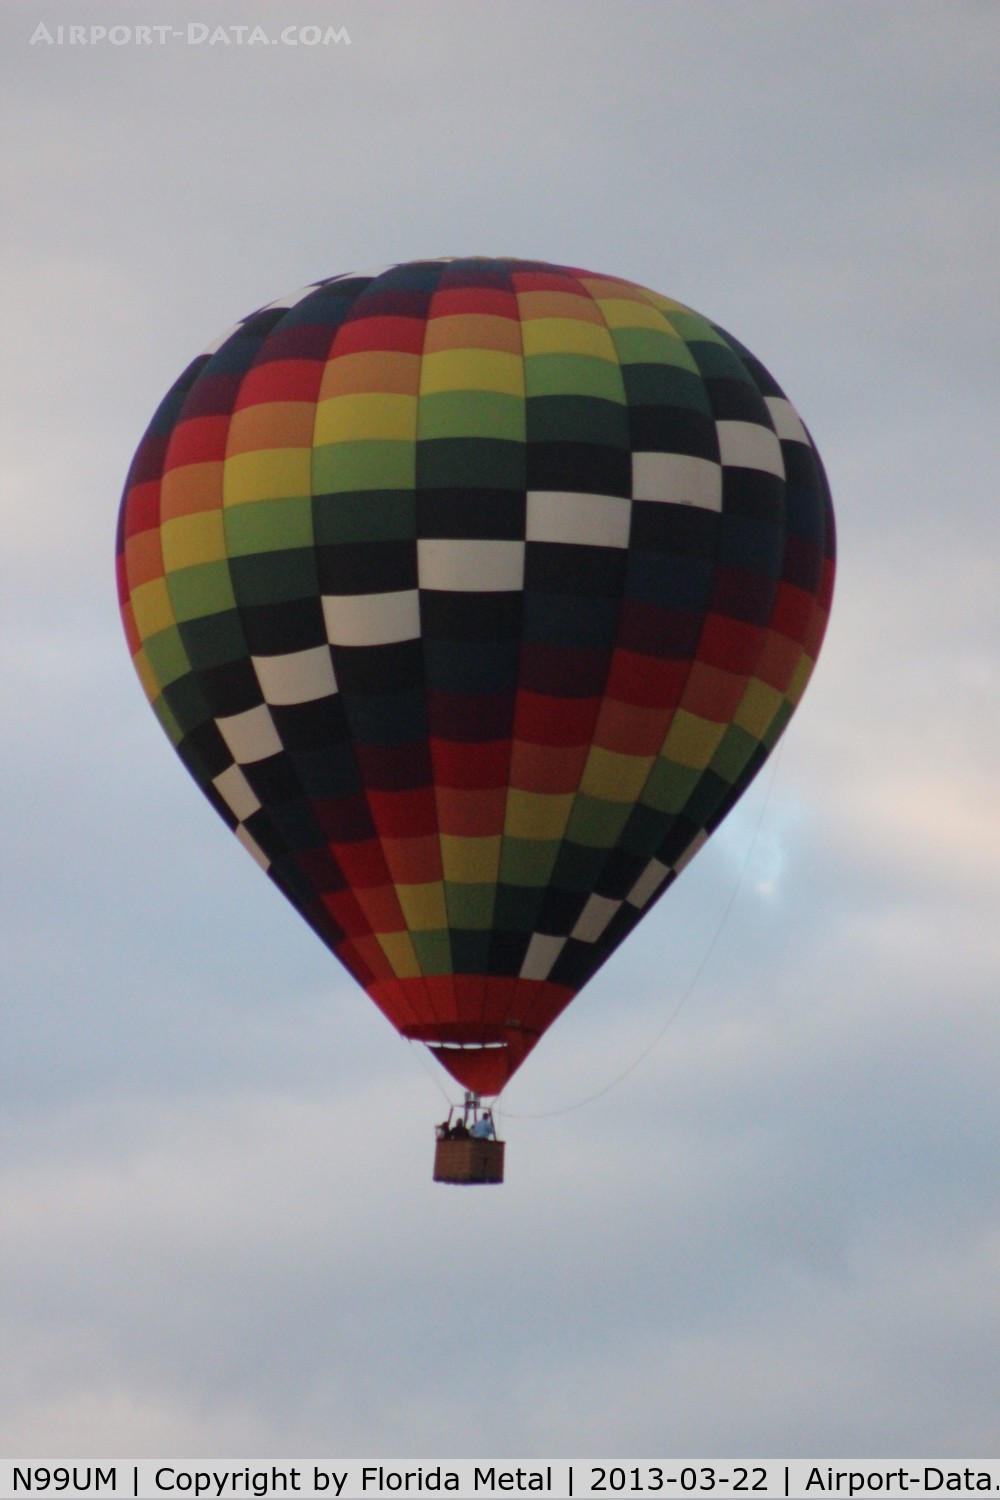 N99UM, UltraMagic H-77 C/N 77/288, Hot Air balloon over Reunion FL